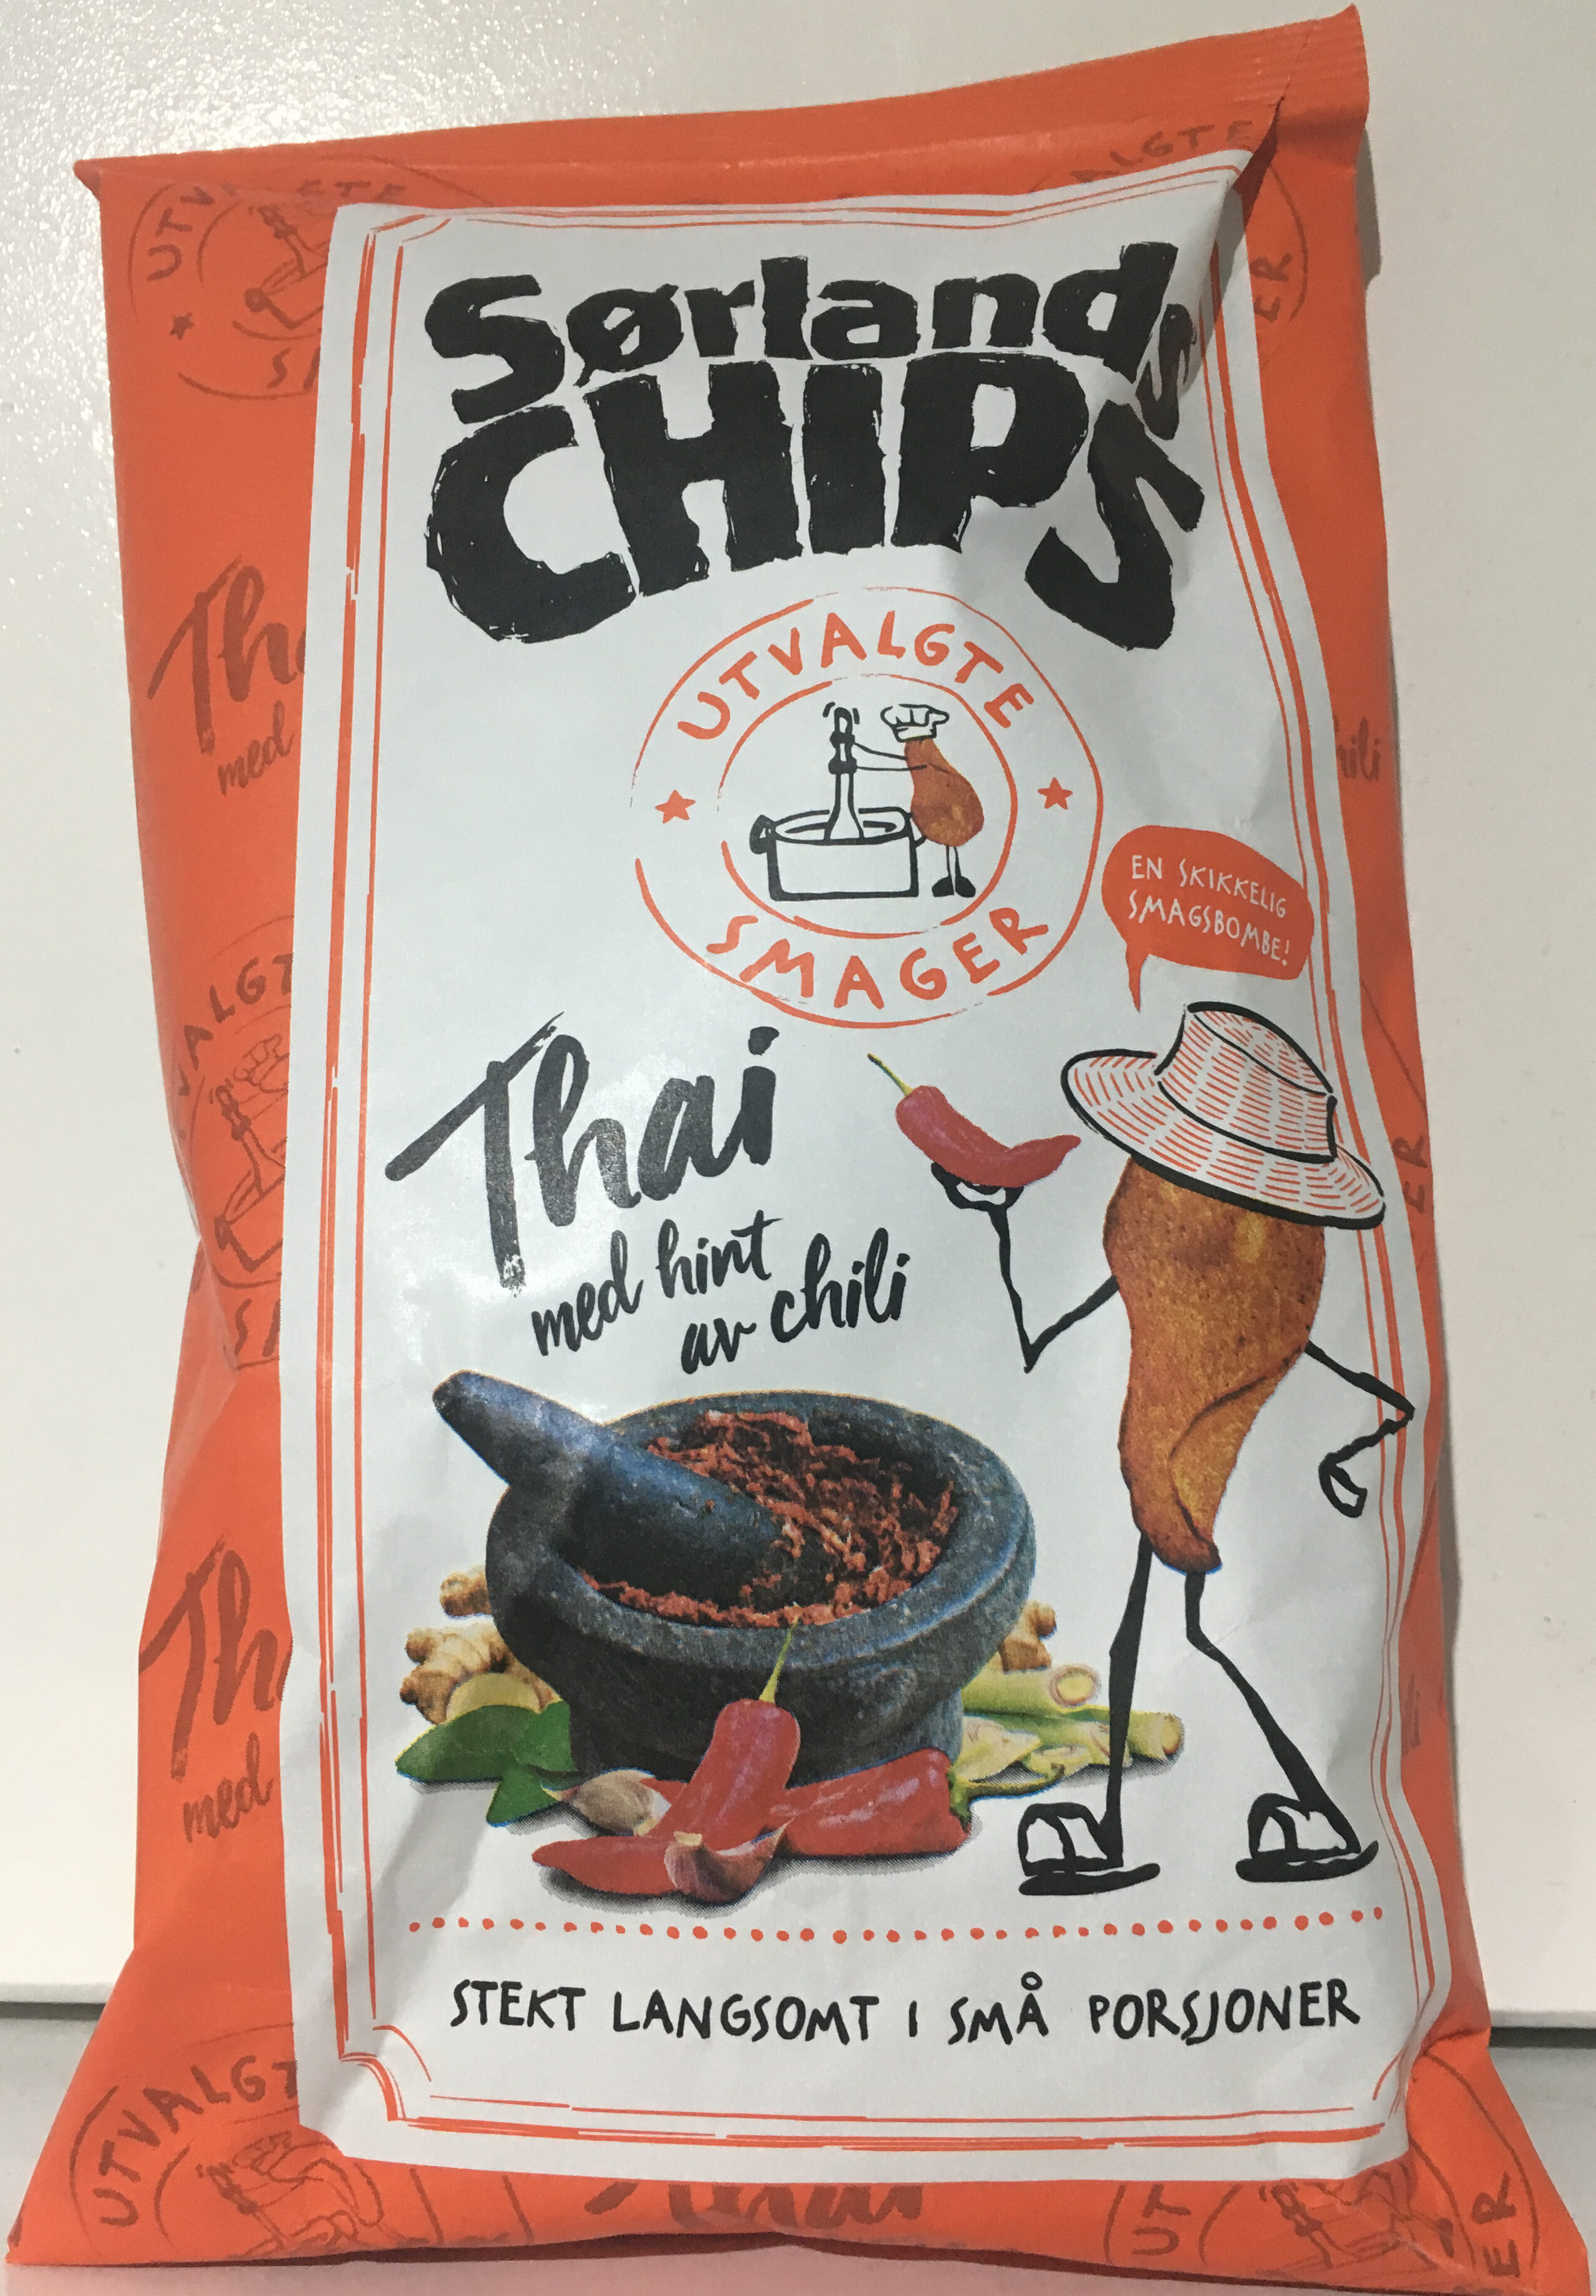 Sørlands Chips Thai med hint av chili - Produkt